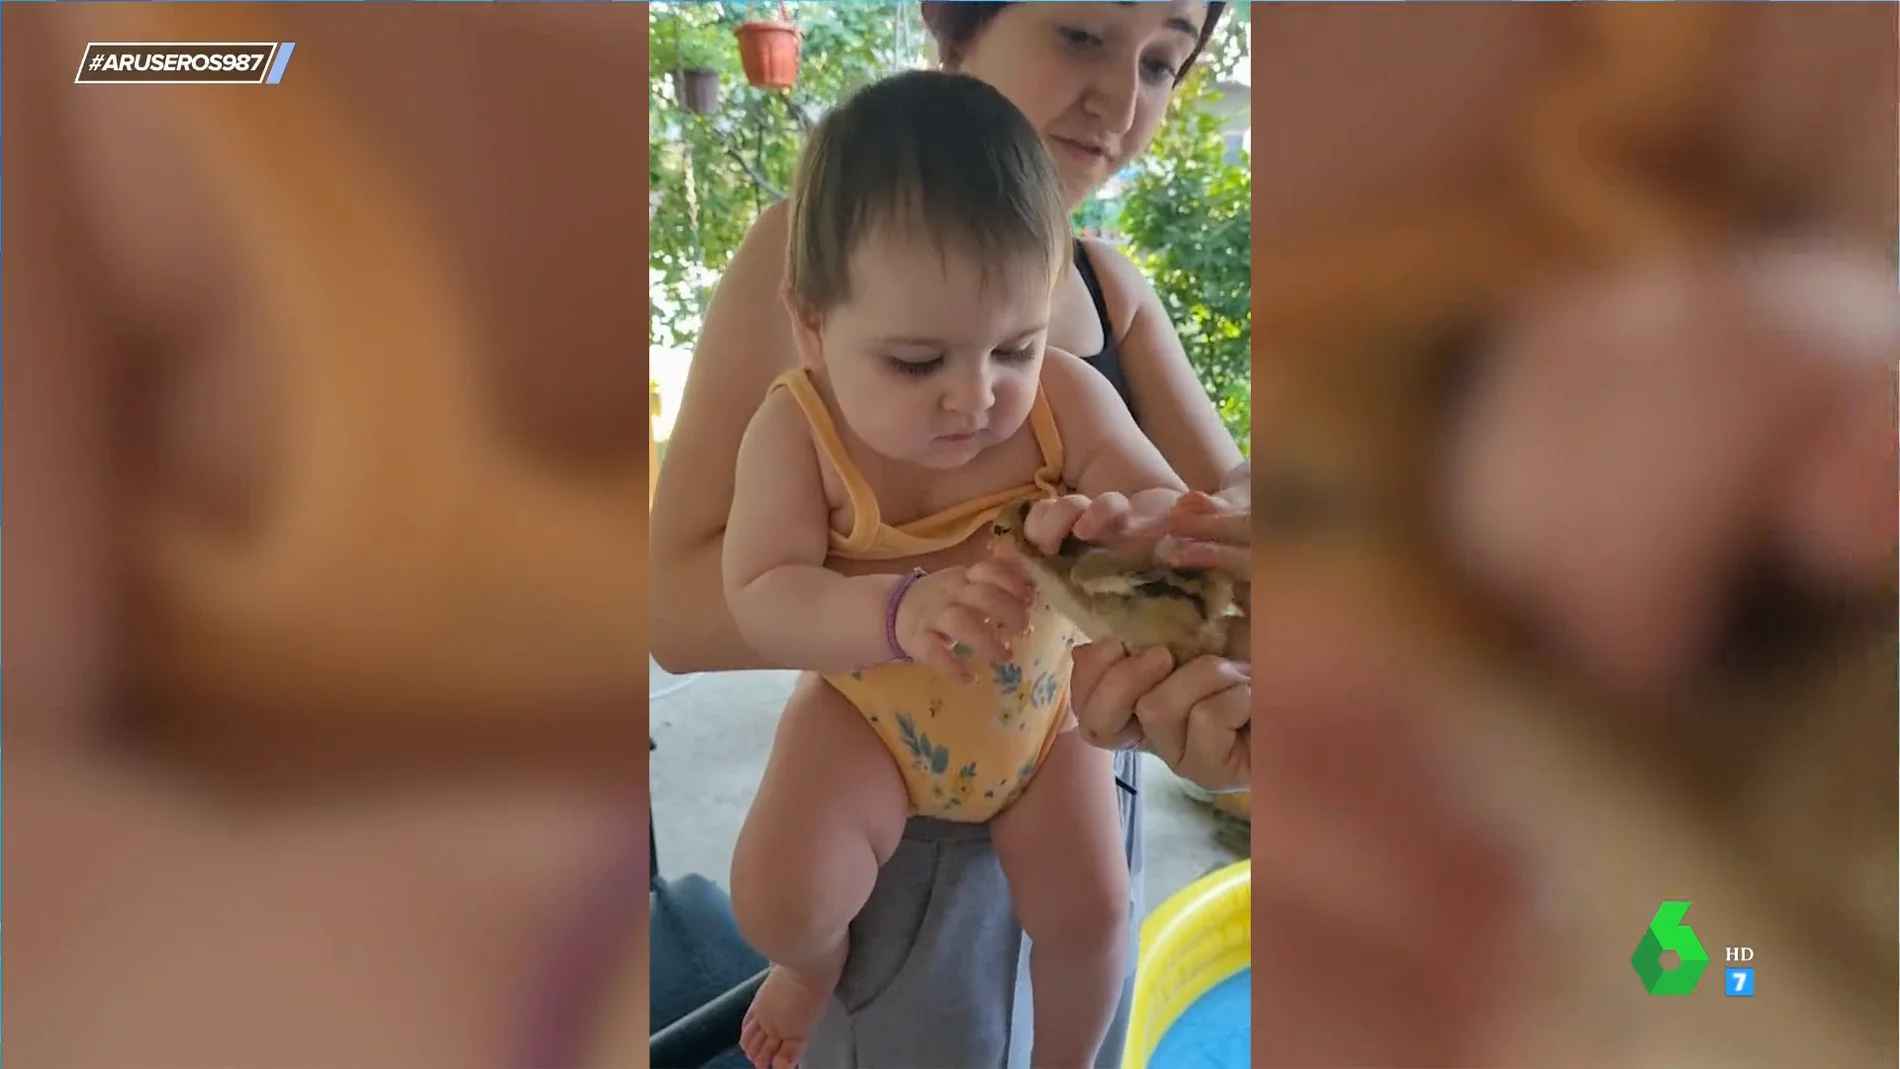 La sorprendente reacción de este bebé cuando ve a un pollito por primera vez: "No le hace ascos a nada"